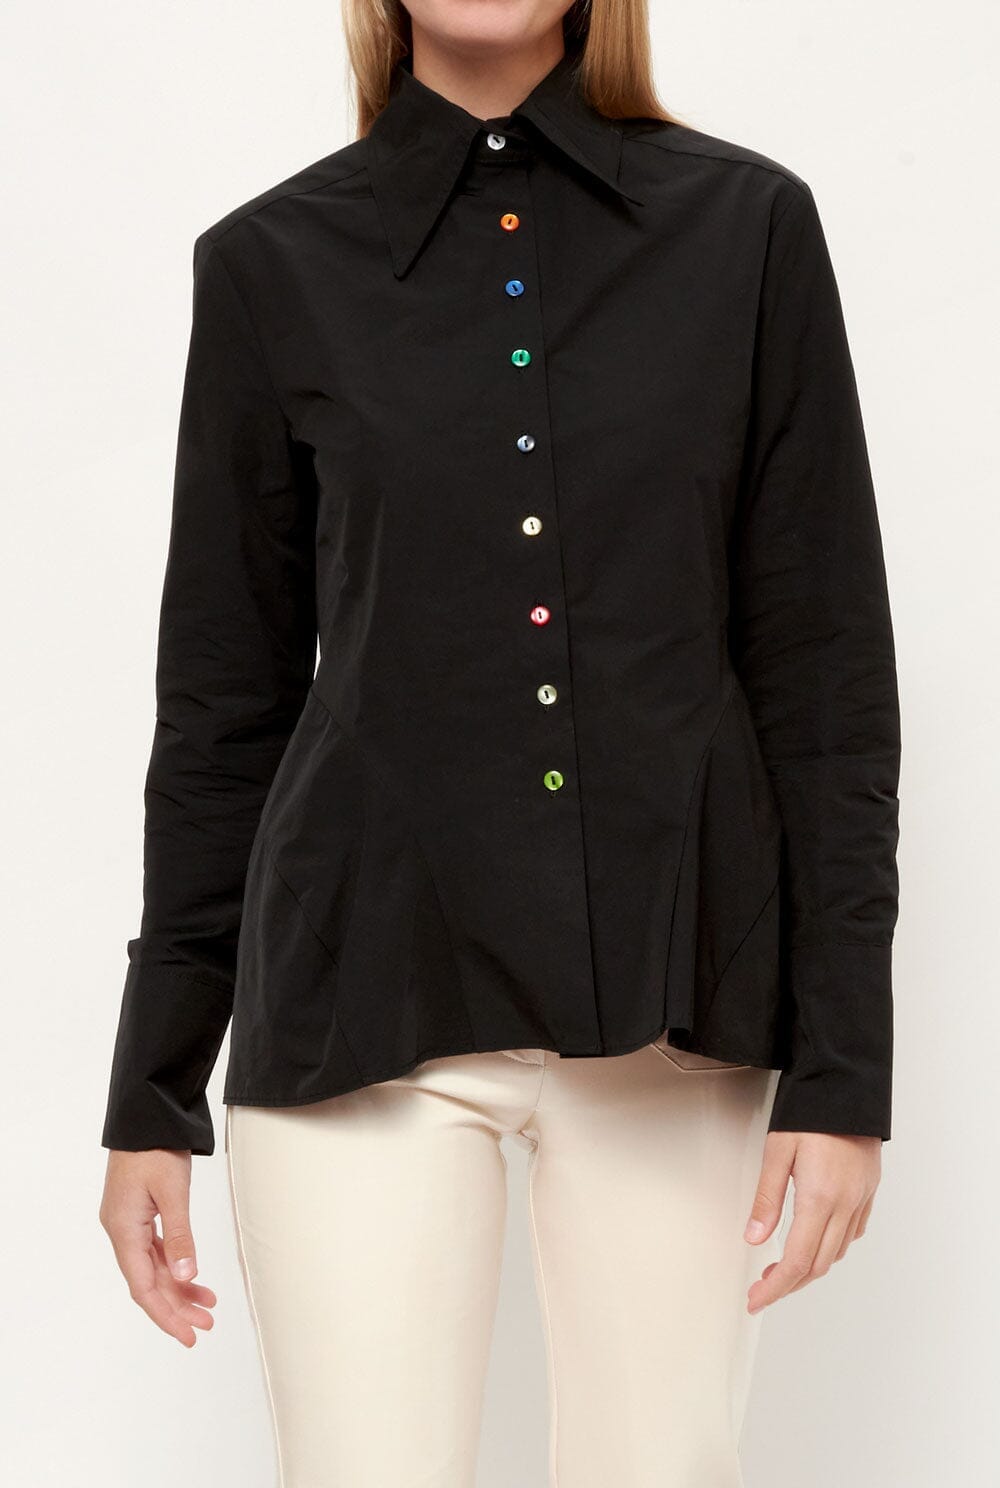 Lilibeth shirt negro. Shirts & blouses Wearitbe 